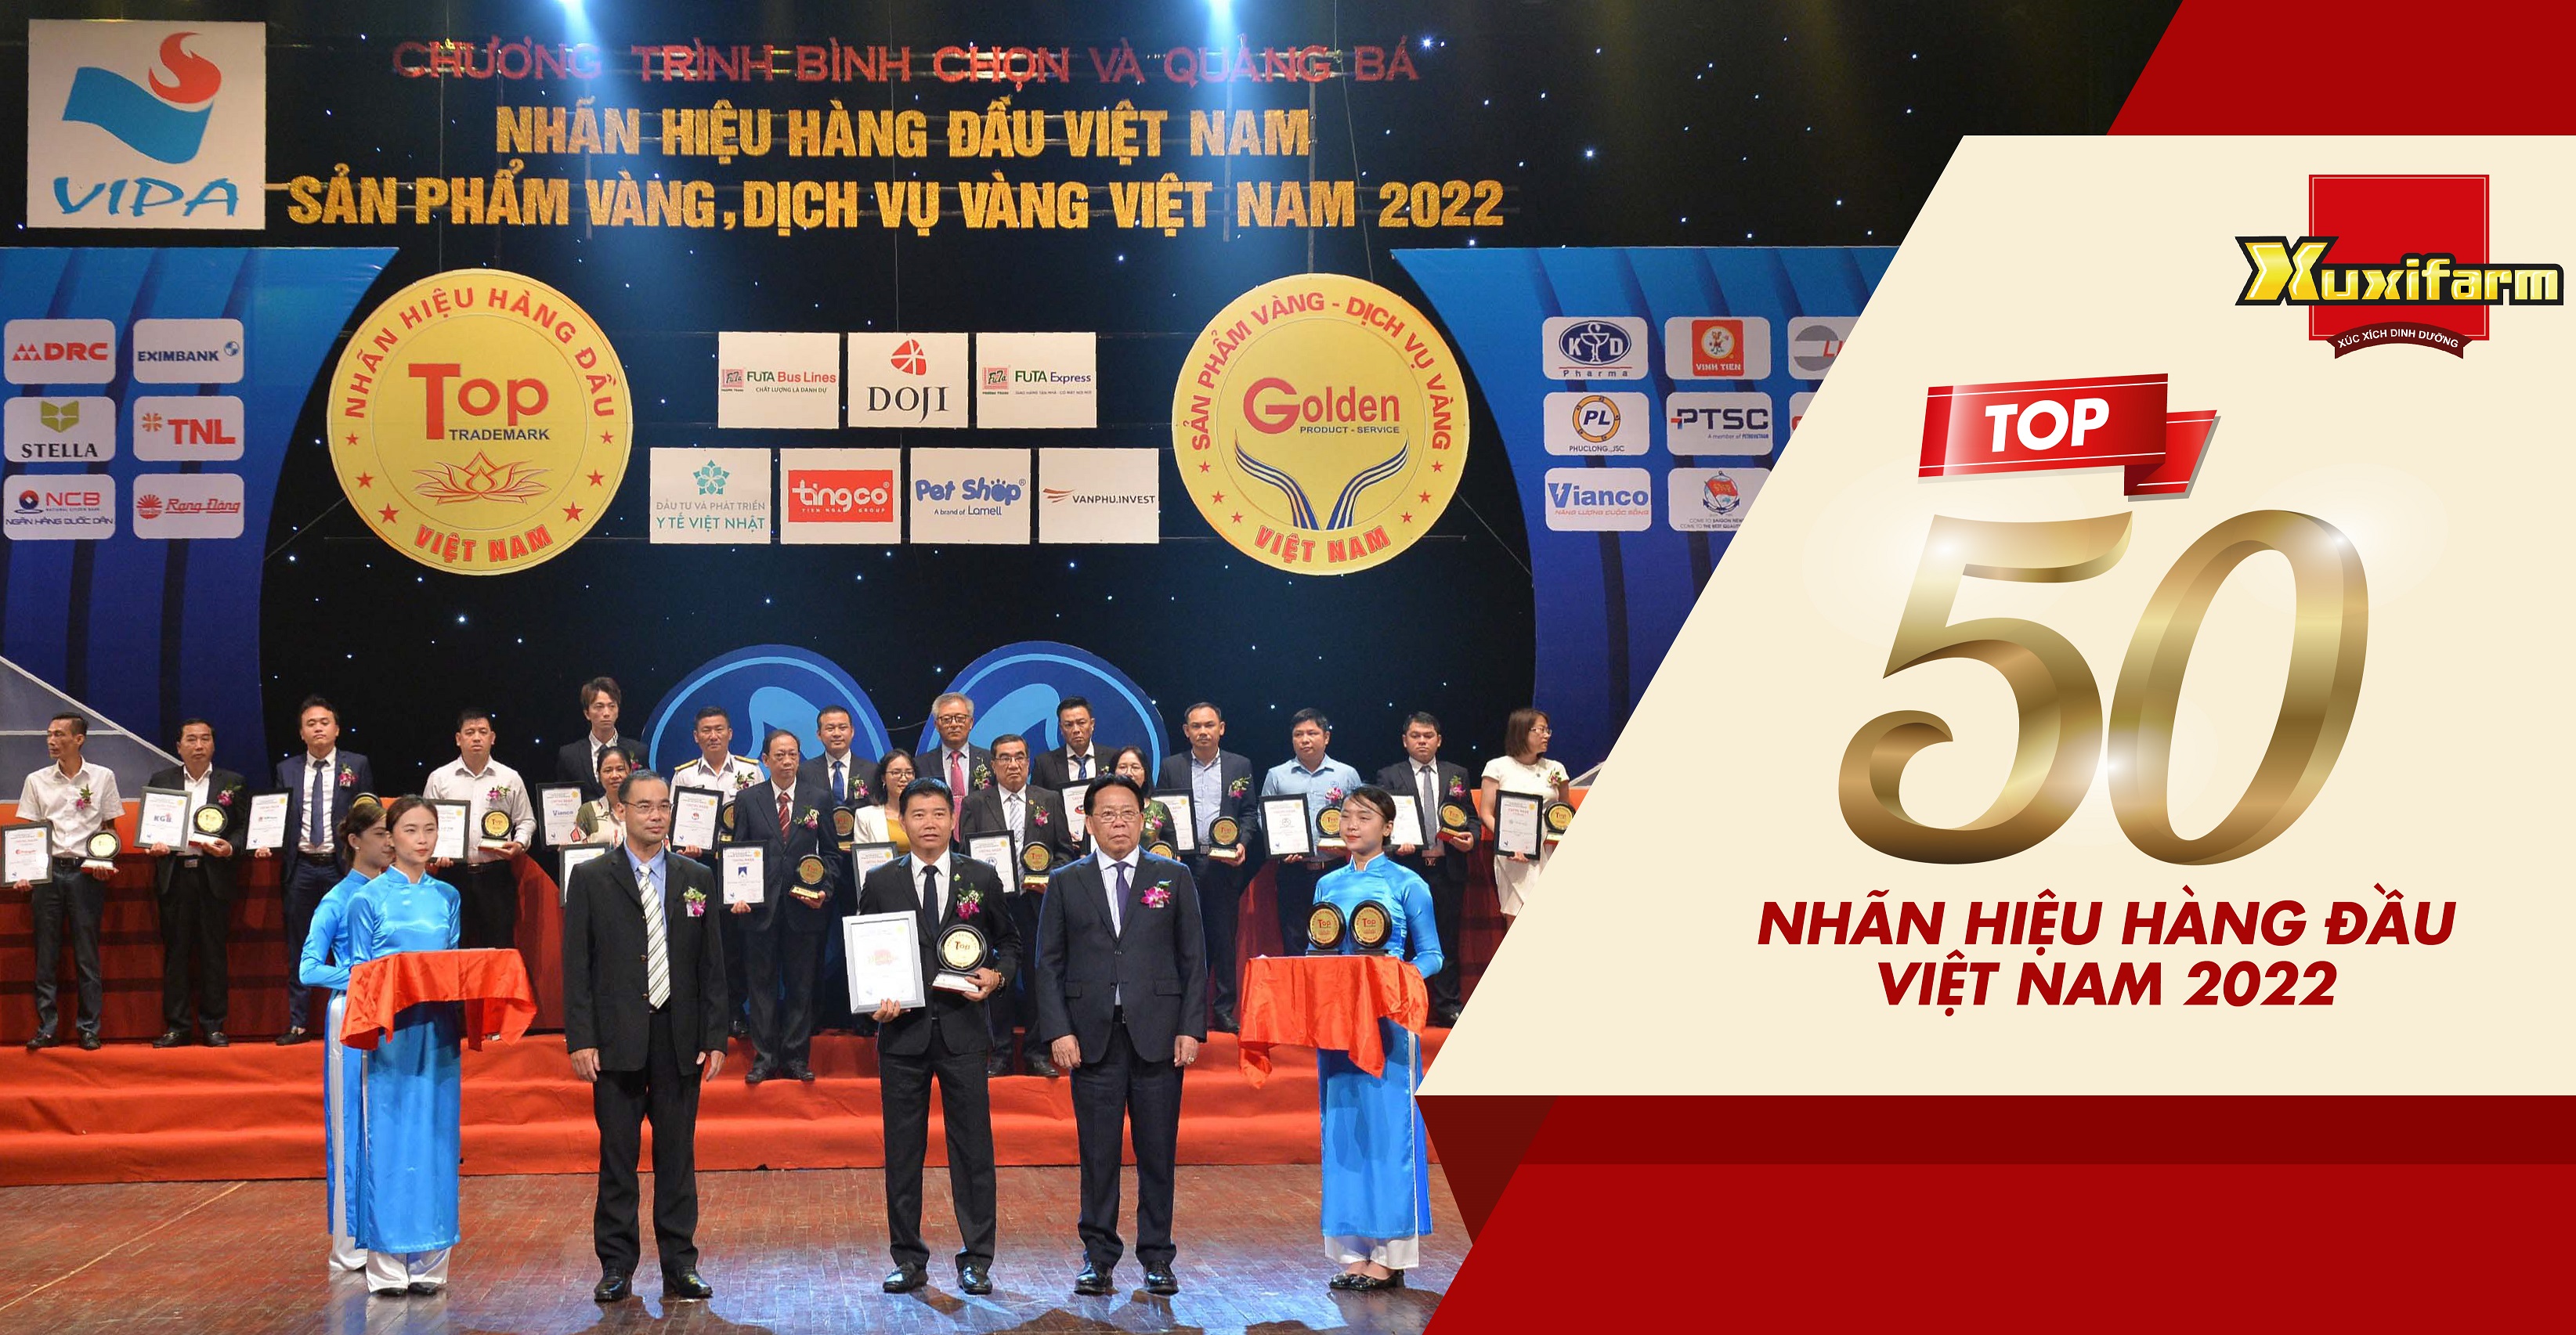 XUXIFARM ĐƯỢC VINH DANH "TOP 50 NHÃN HIỆU HÀNG ĐẦU VIỆT NĂM 2022"